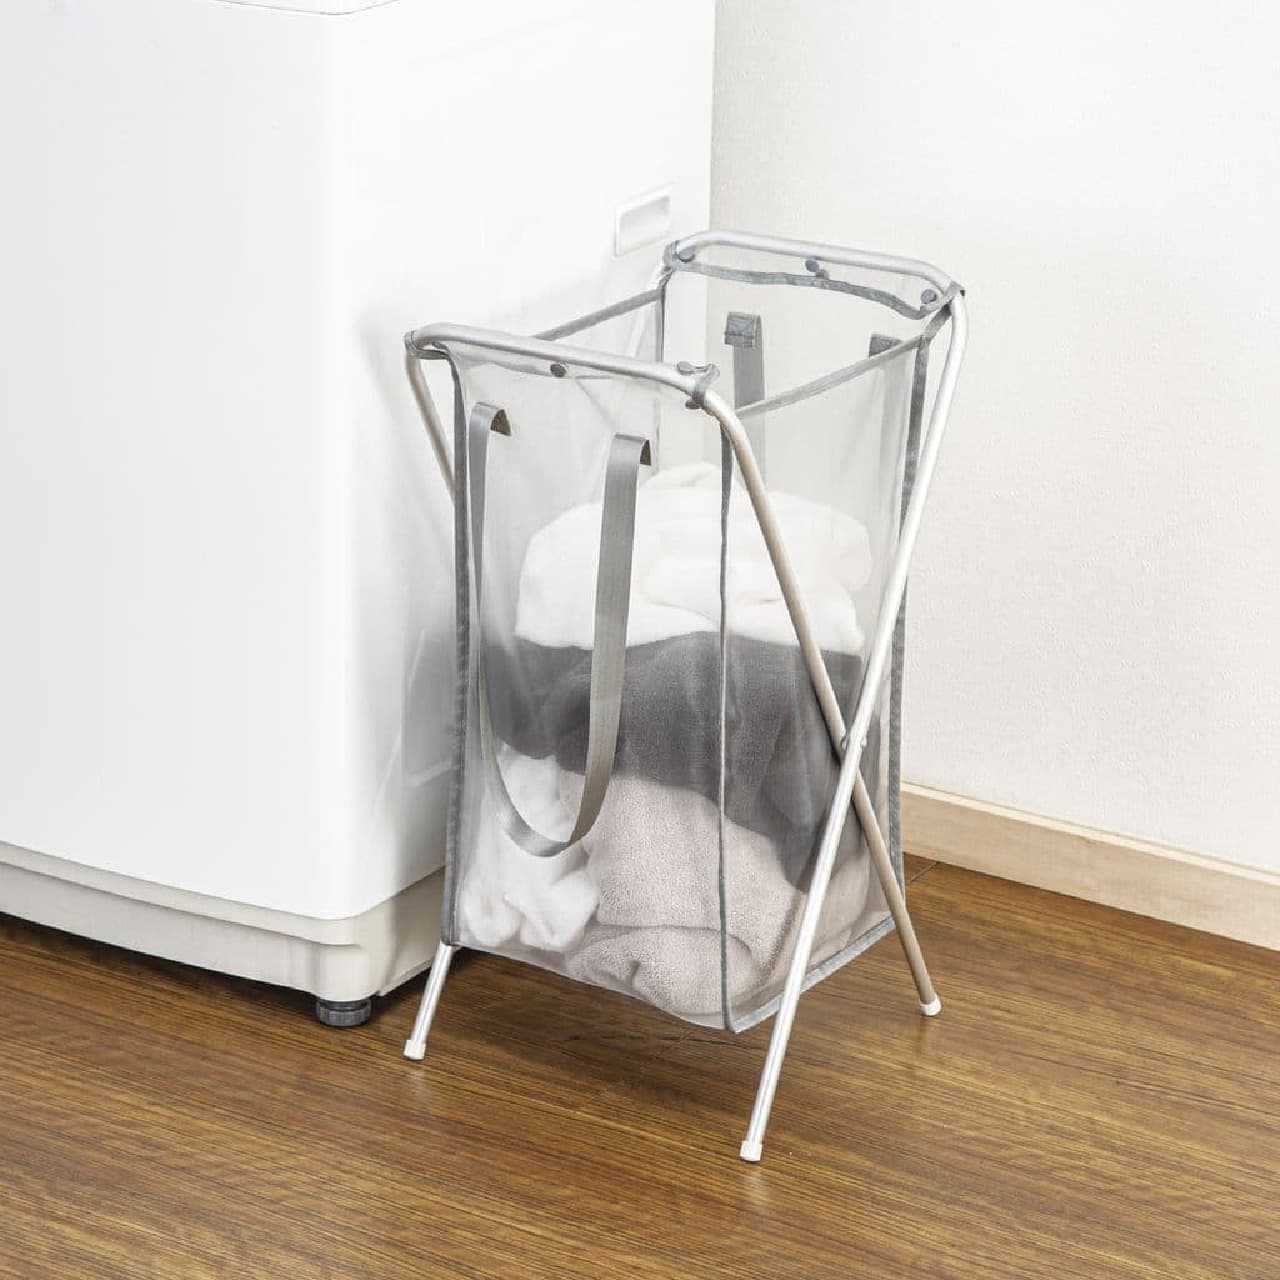 Nitori "Foldable Aluminum Laundry Basket